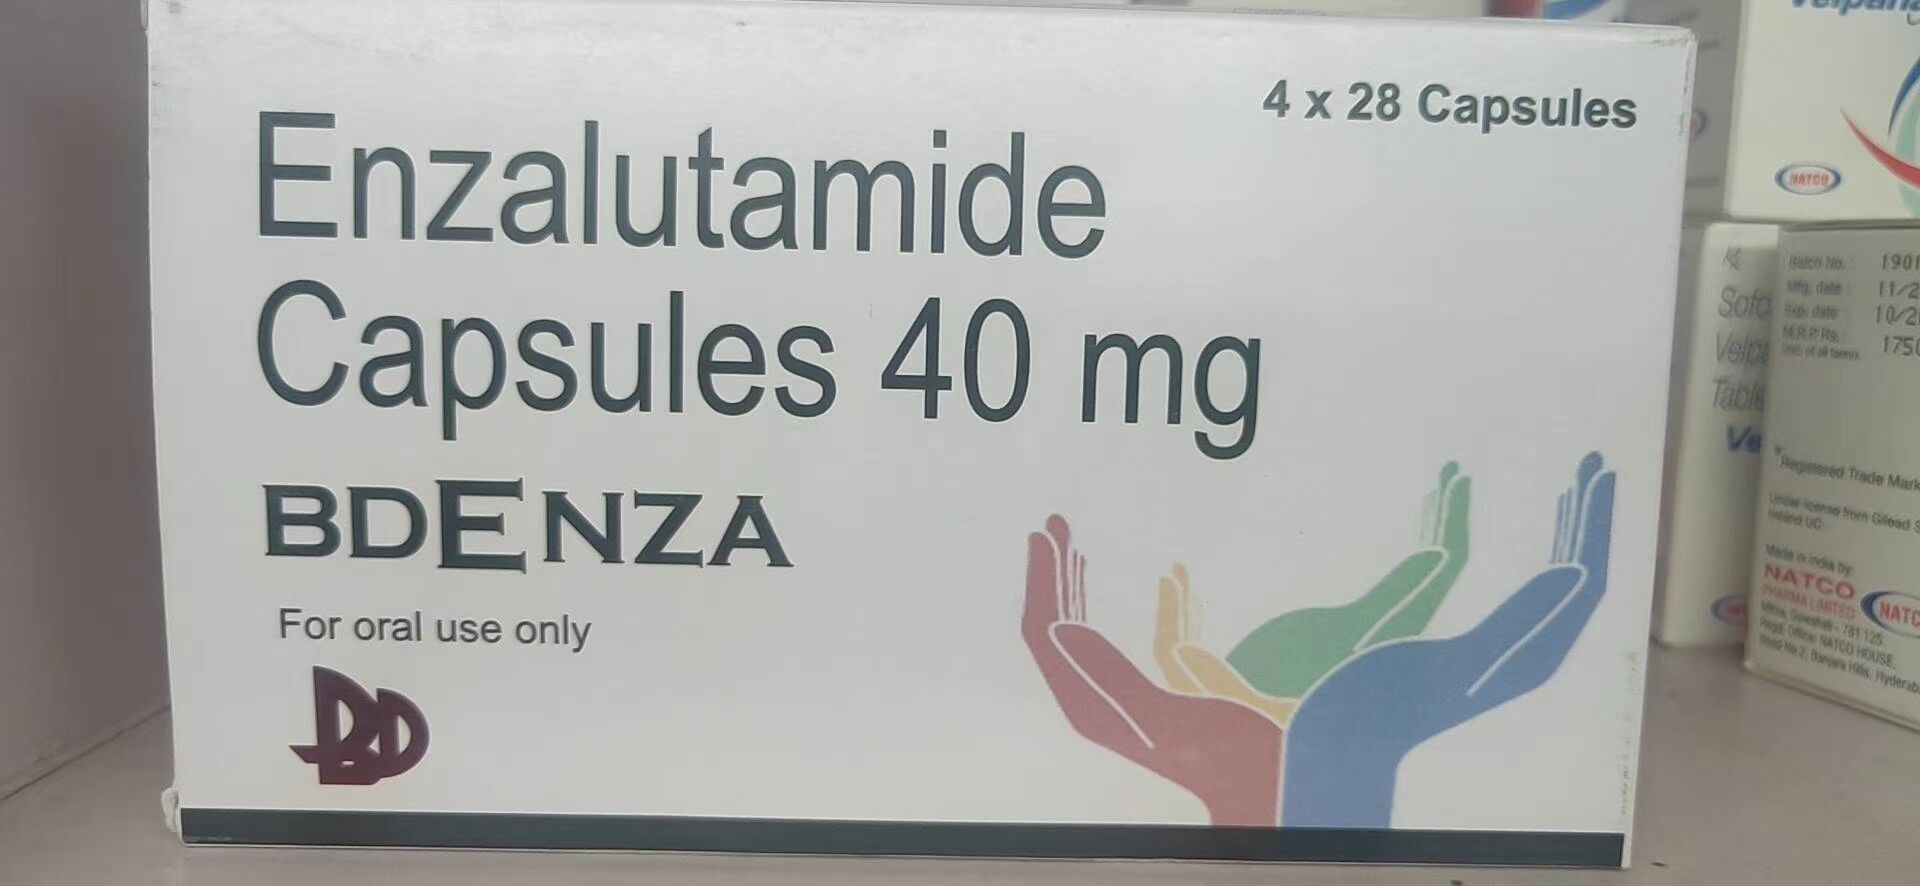 印度恩扎卢胺/恩杂鲁胺/Enzalutamide价格